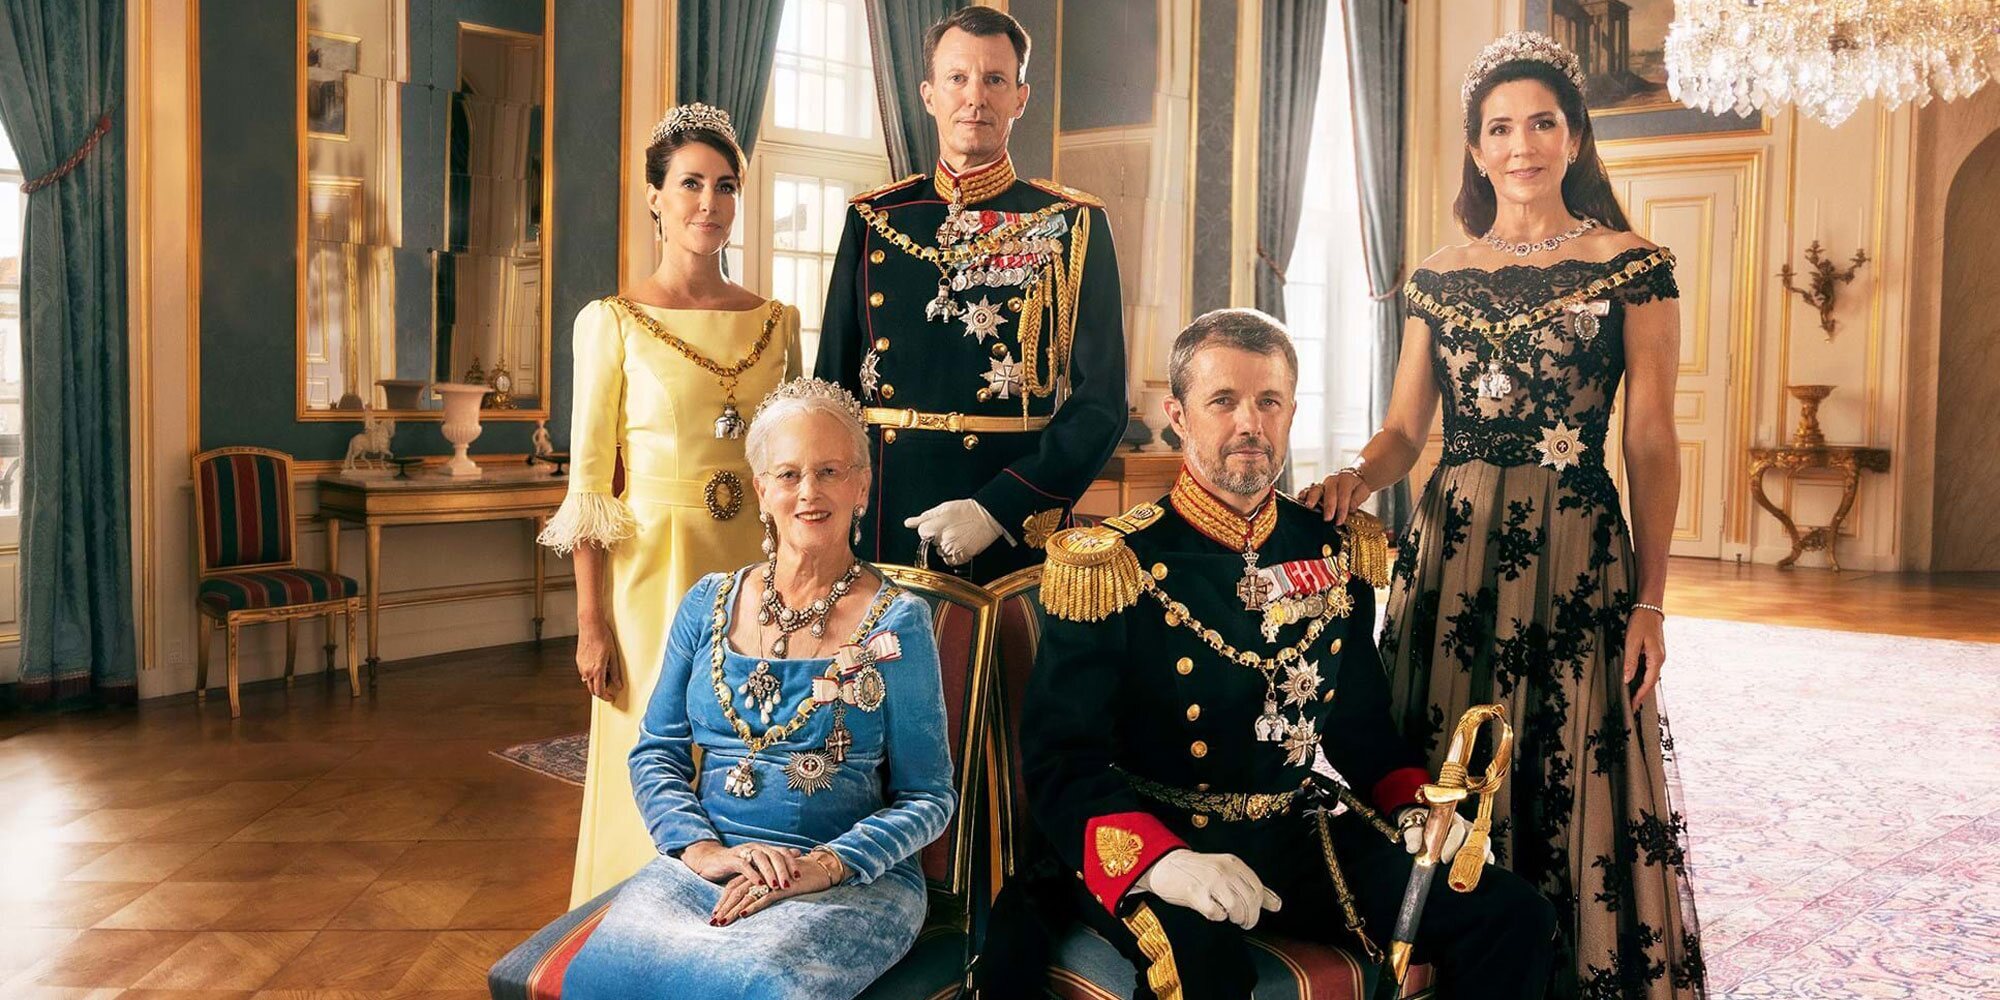 Las fotos oficiales de la Familia Real Danesa que muestran tiempos mejores en el tormentoso año del aniversario de reinado